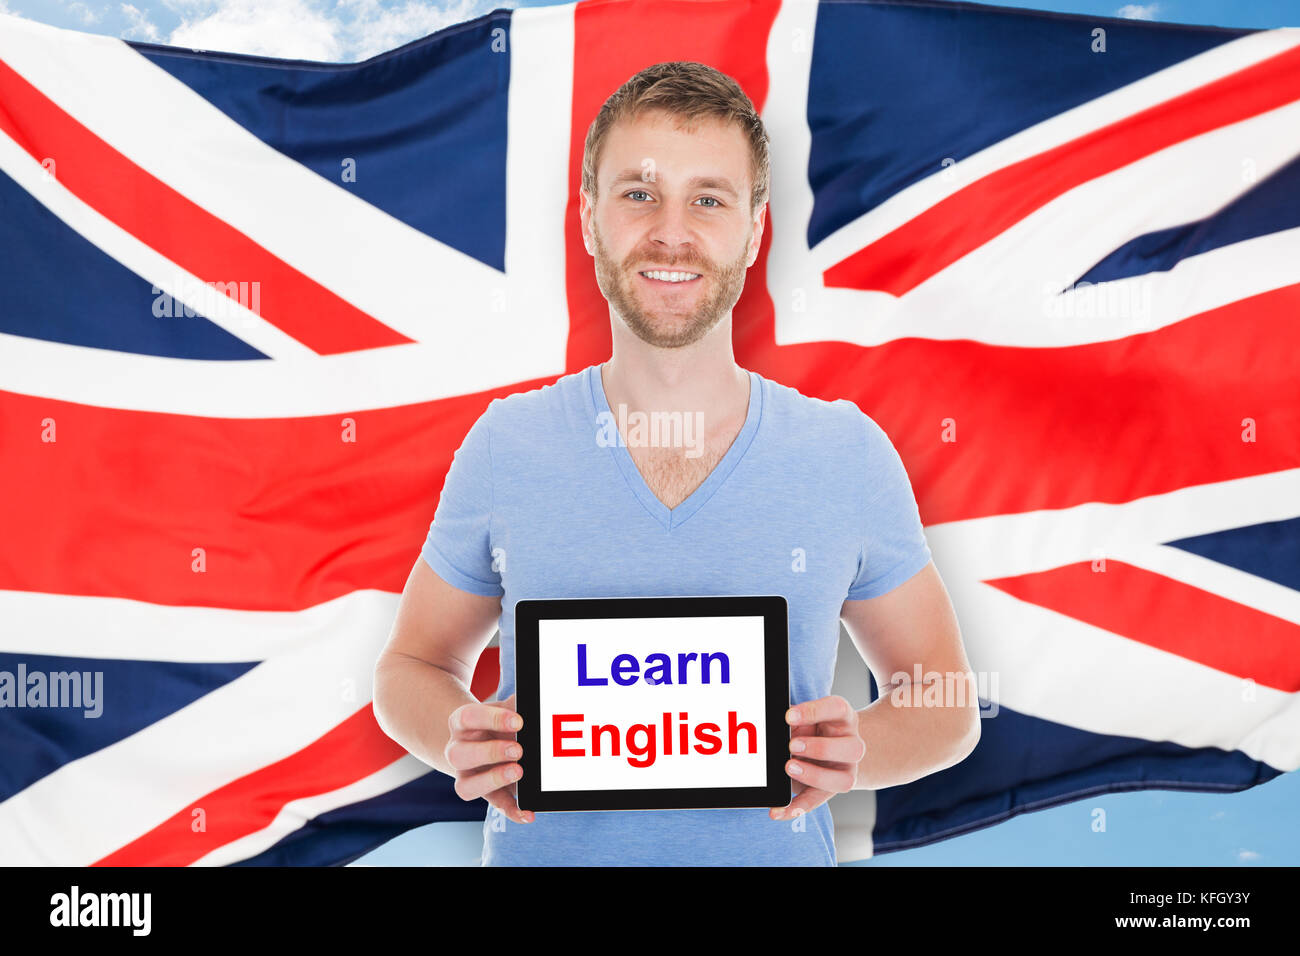 Jeune homme en face de drapeau britannique holding digital tablet avec apprendre Texte anglais Banque D'Images